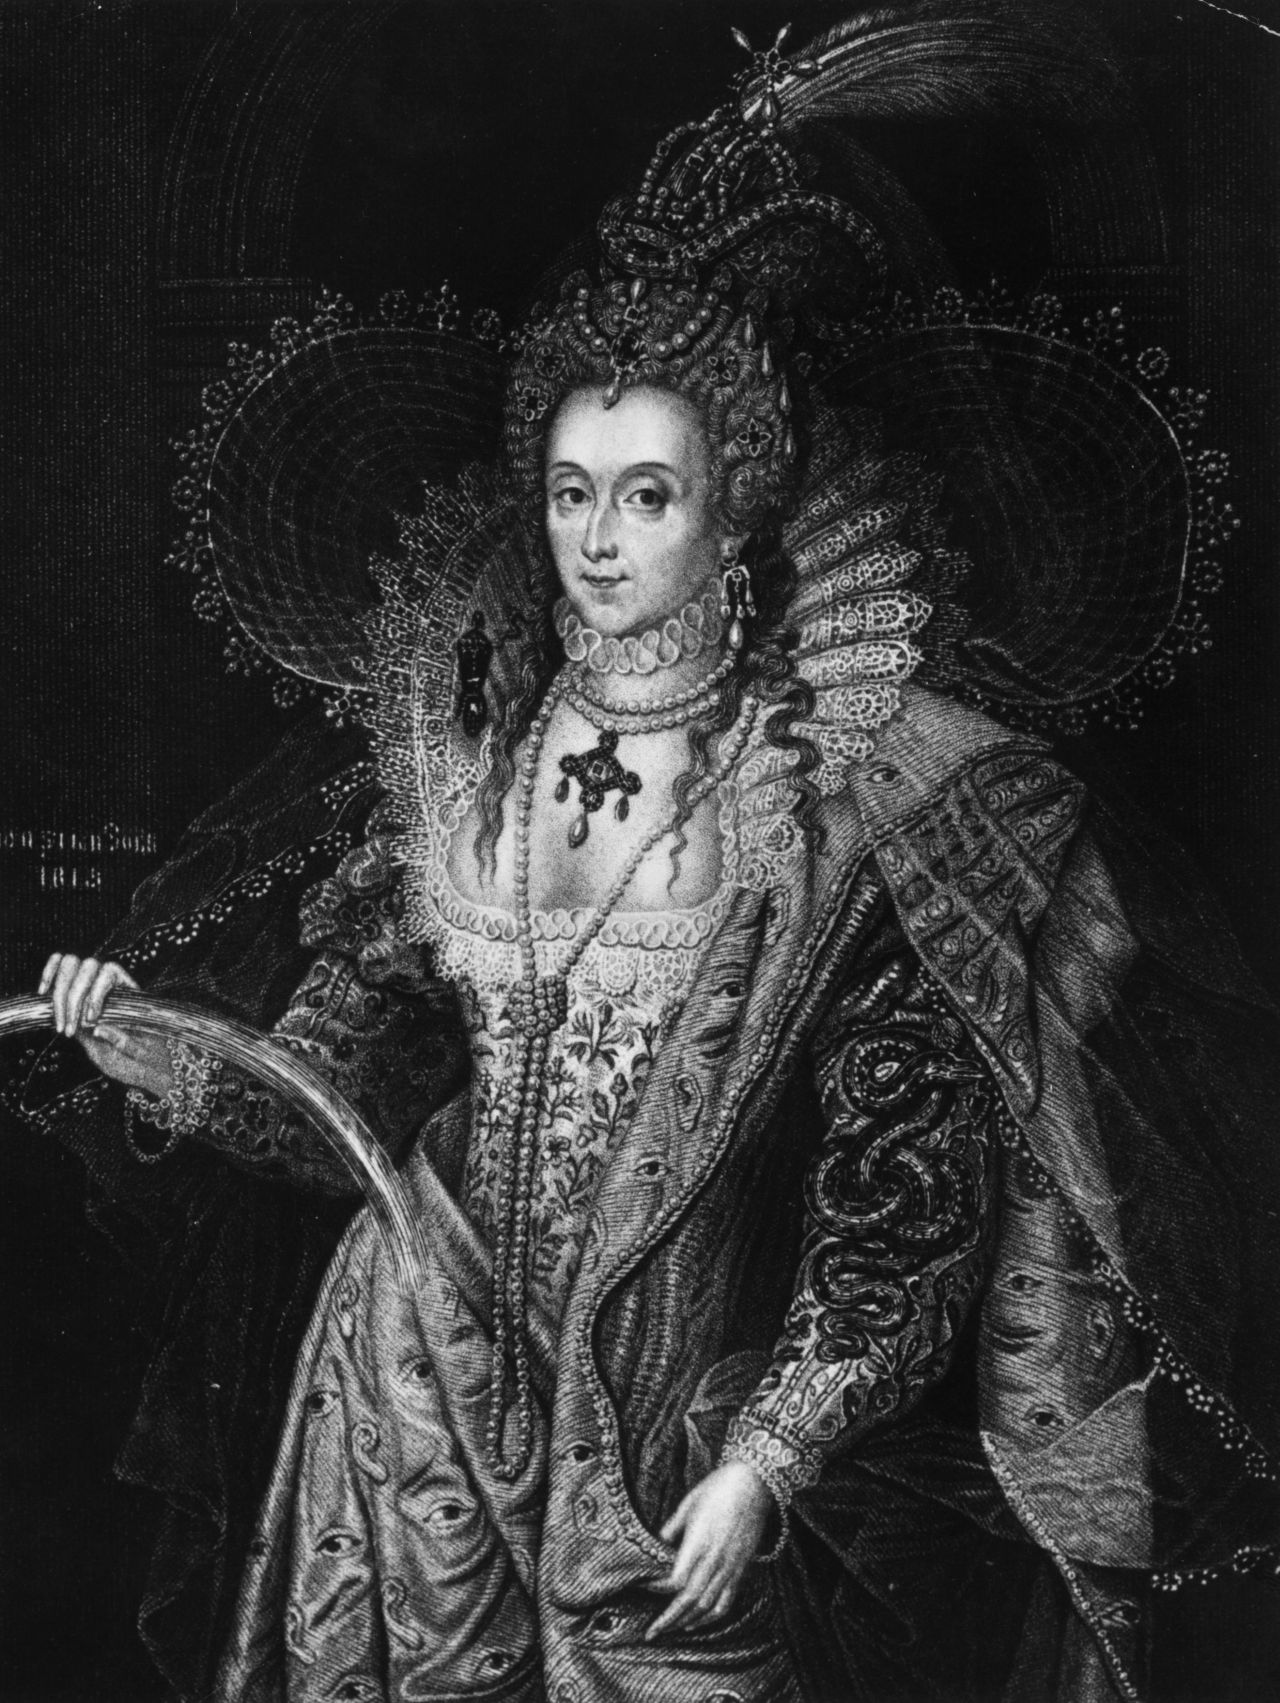 <p><strong>Кралица Елизабет I е била мъж&nbsp;</strong></p>

<p>Теорията е, че кралица Елизабет I е починала млада и е заменена от младо момче, което много прилича на нея. Всичко това, за да обясни колко твърда е била тя като владетел.</p>